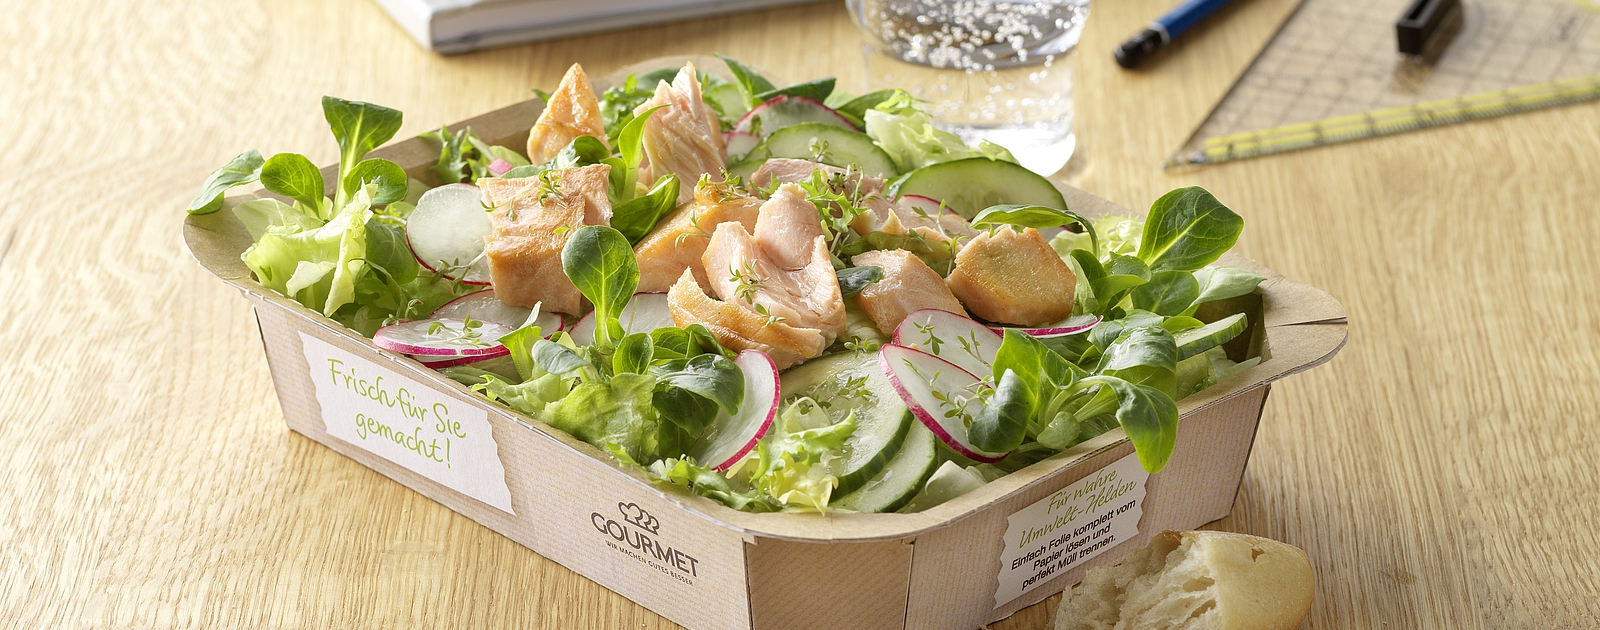 Gebratene Lachsstücke auf Blattsalat aus dem Salat & Co Sortiment von GOURMET Business